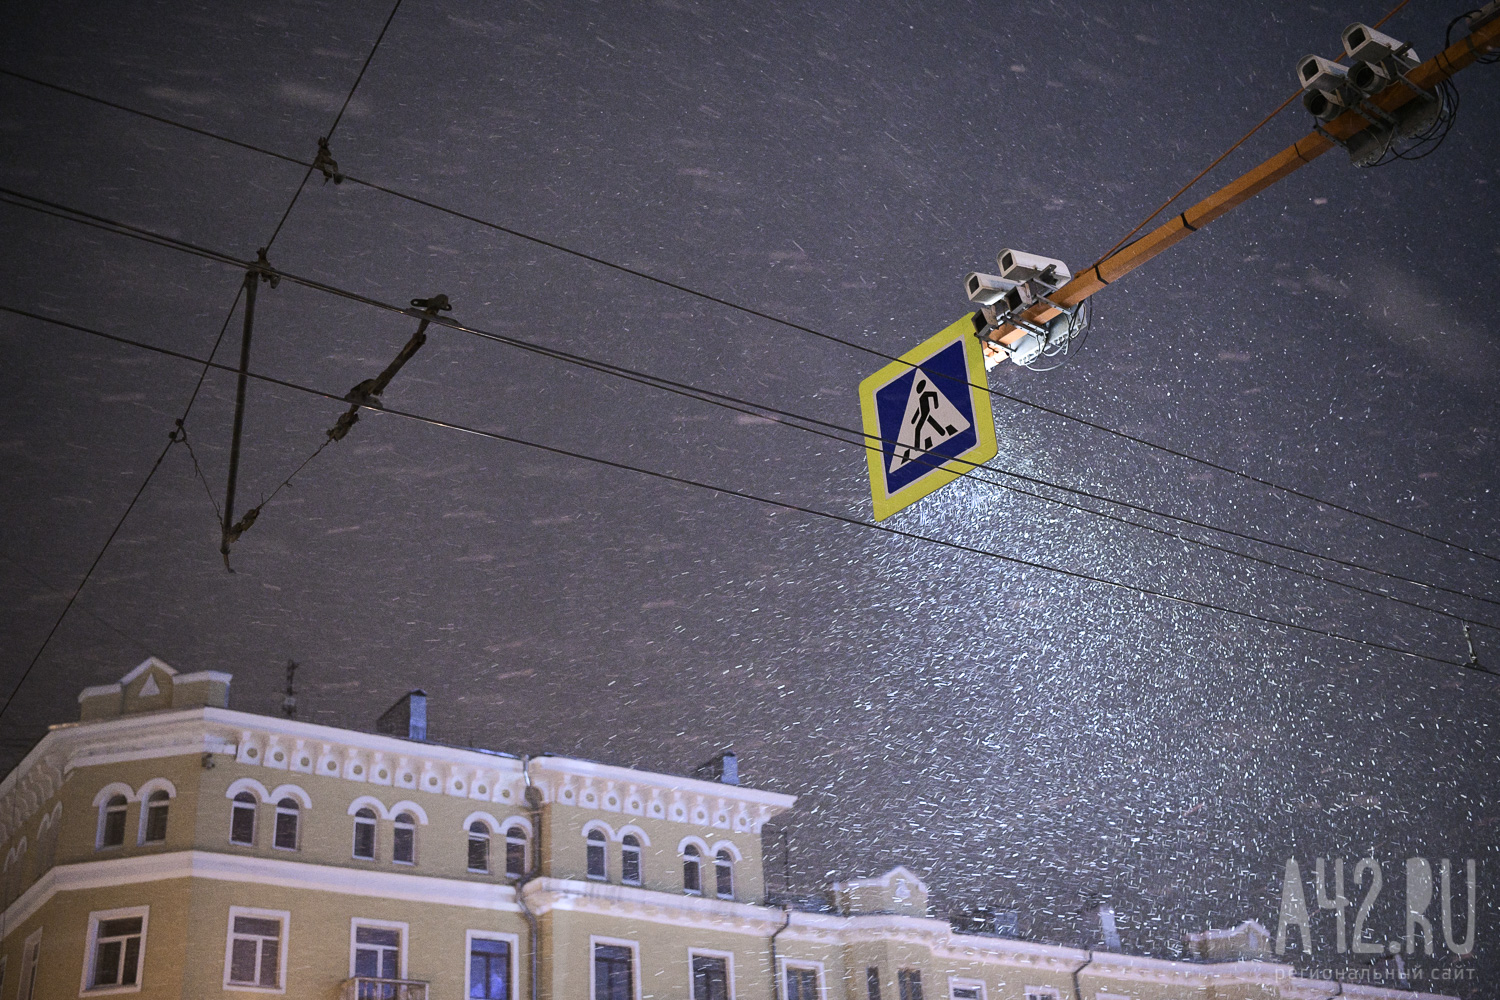 Снег и перепады температур от -11 до -32 ожидаются на выходных в Кузбассе